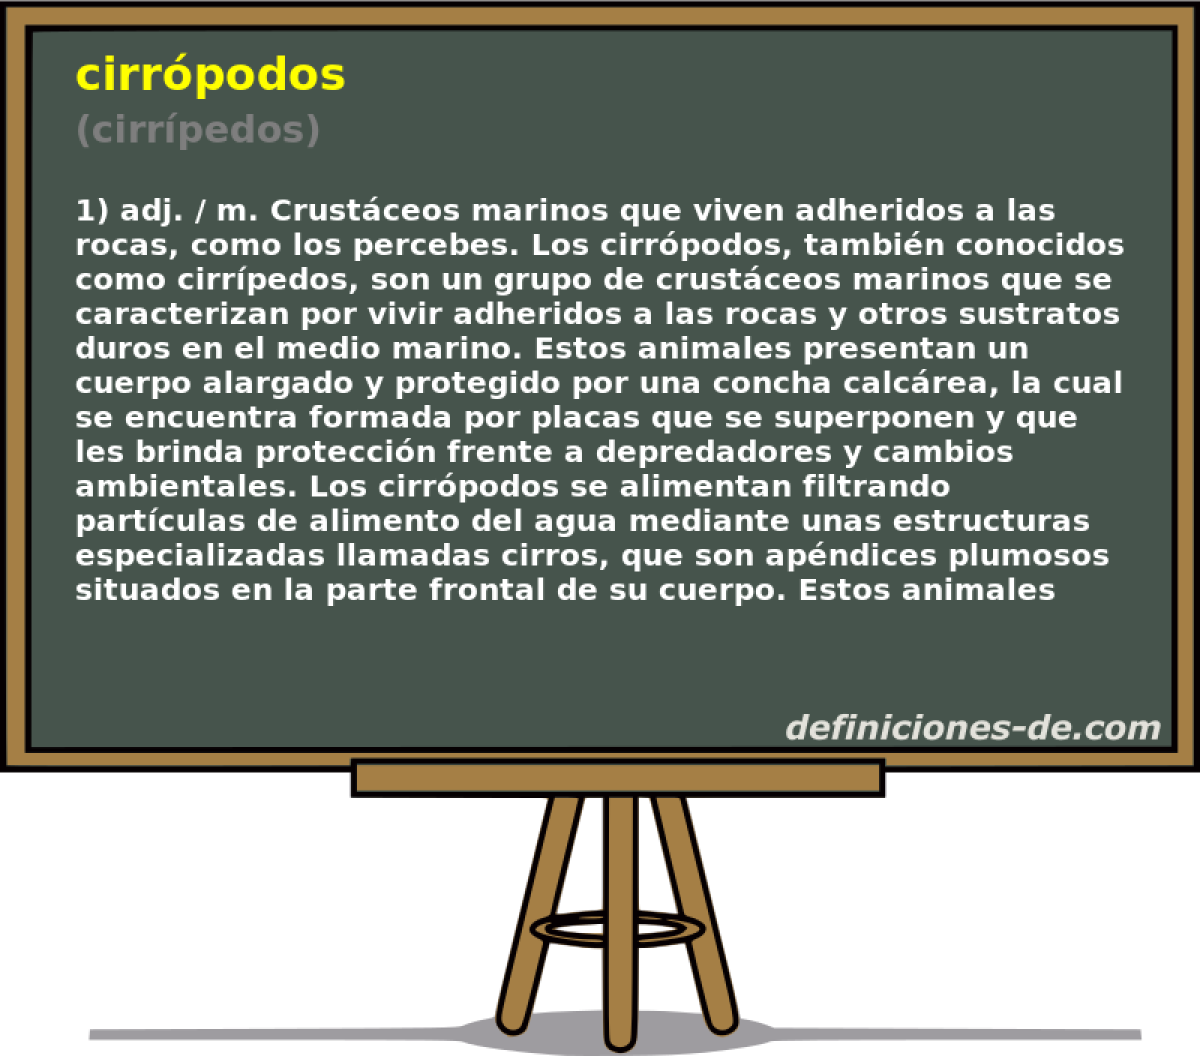 cirrpodos (cirrpedos)